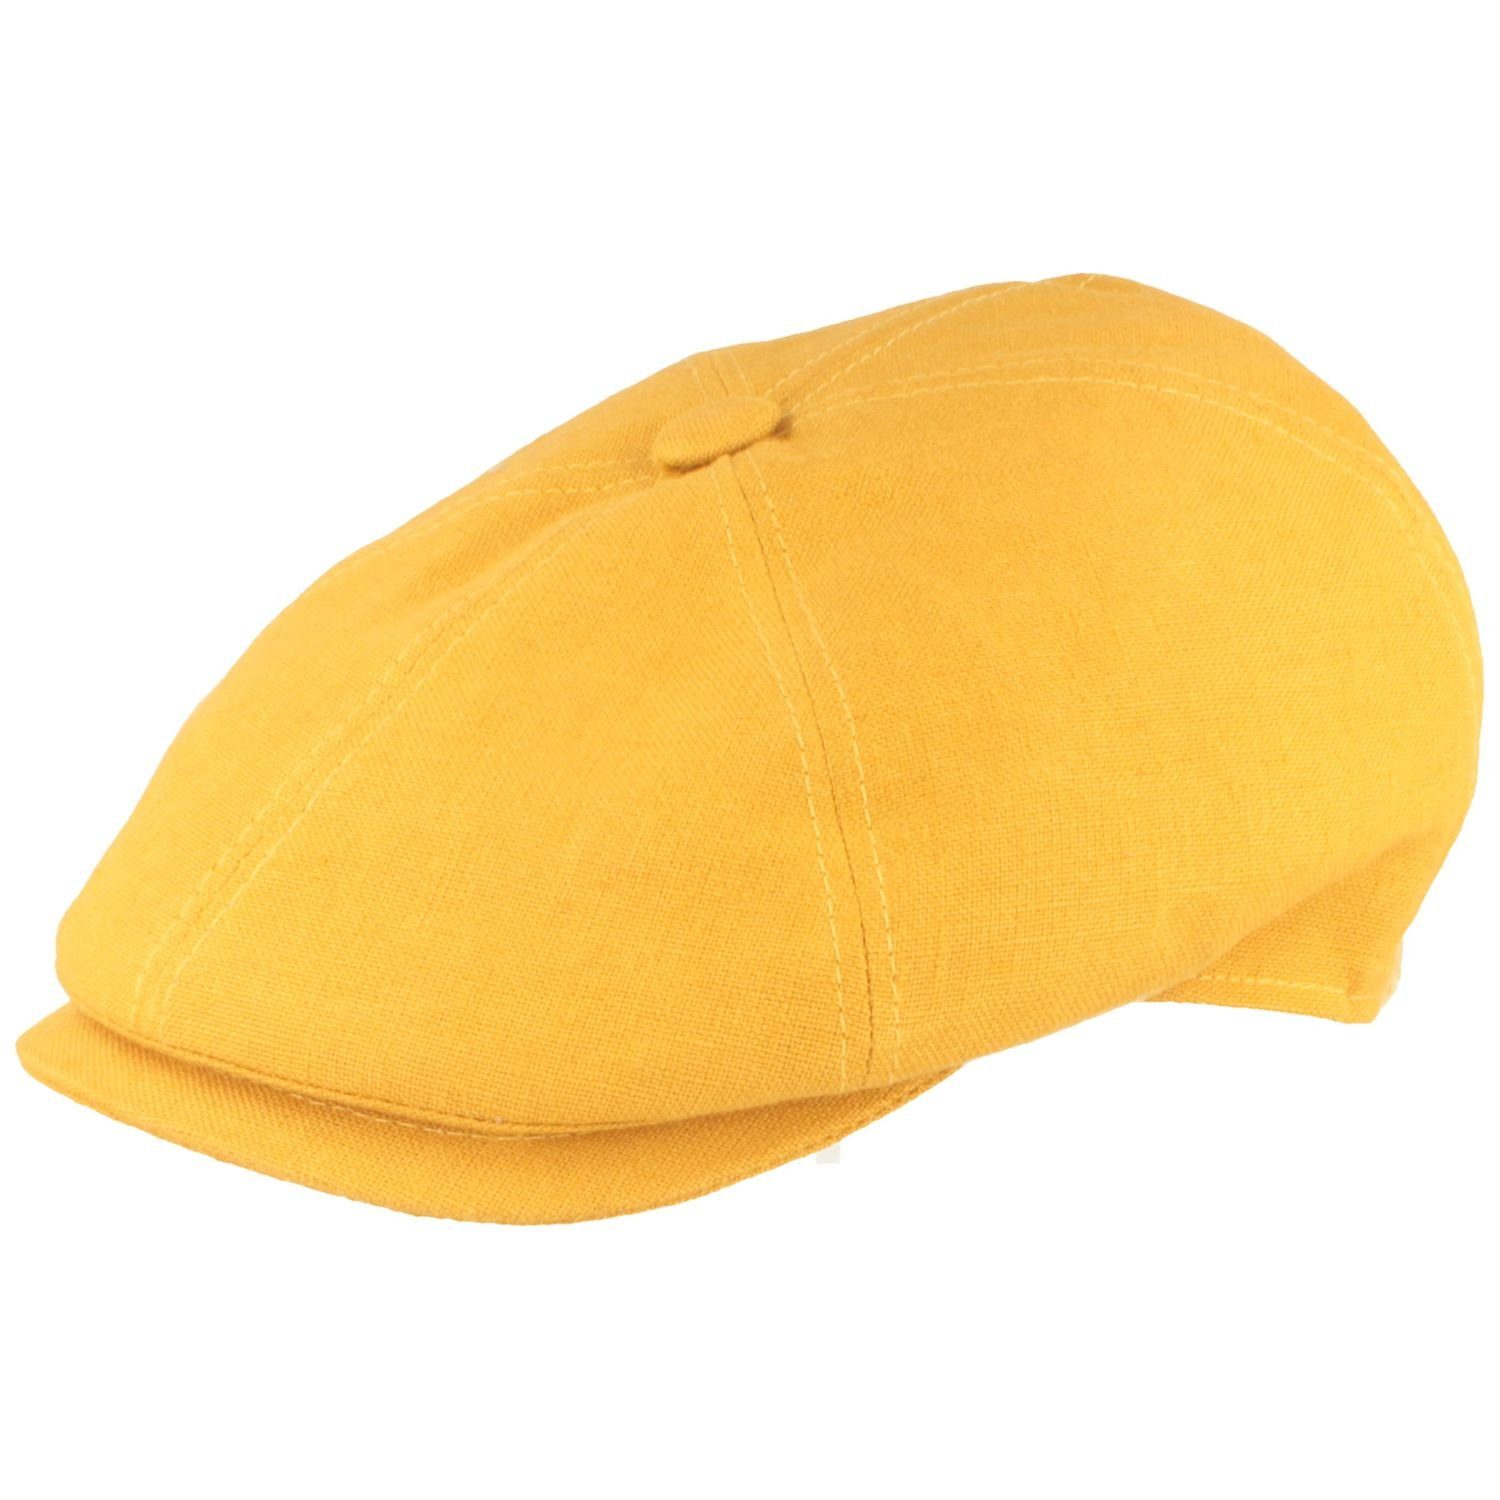 Breiter Schiebermütze 6-teilige Flatcap 100% Organic Leinen gelb